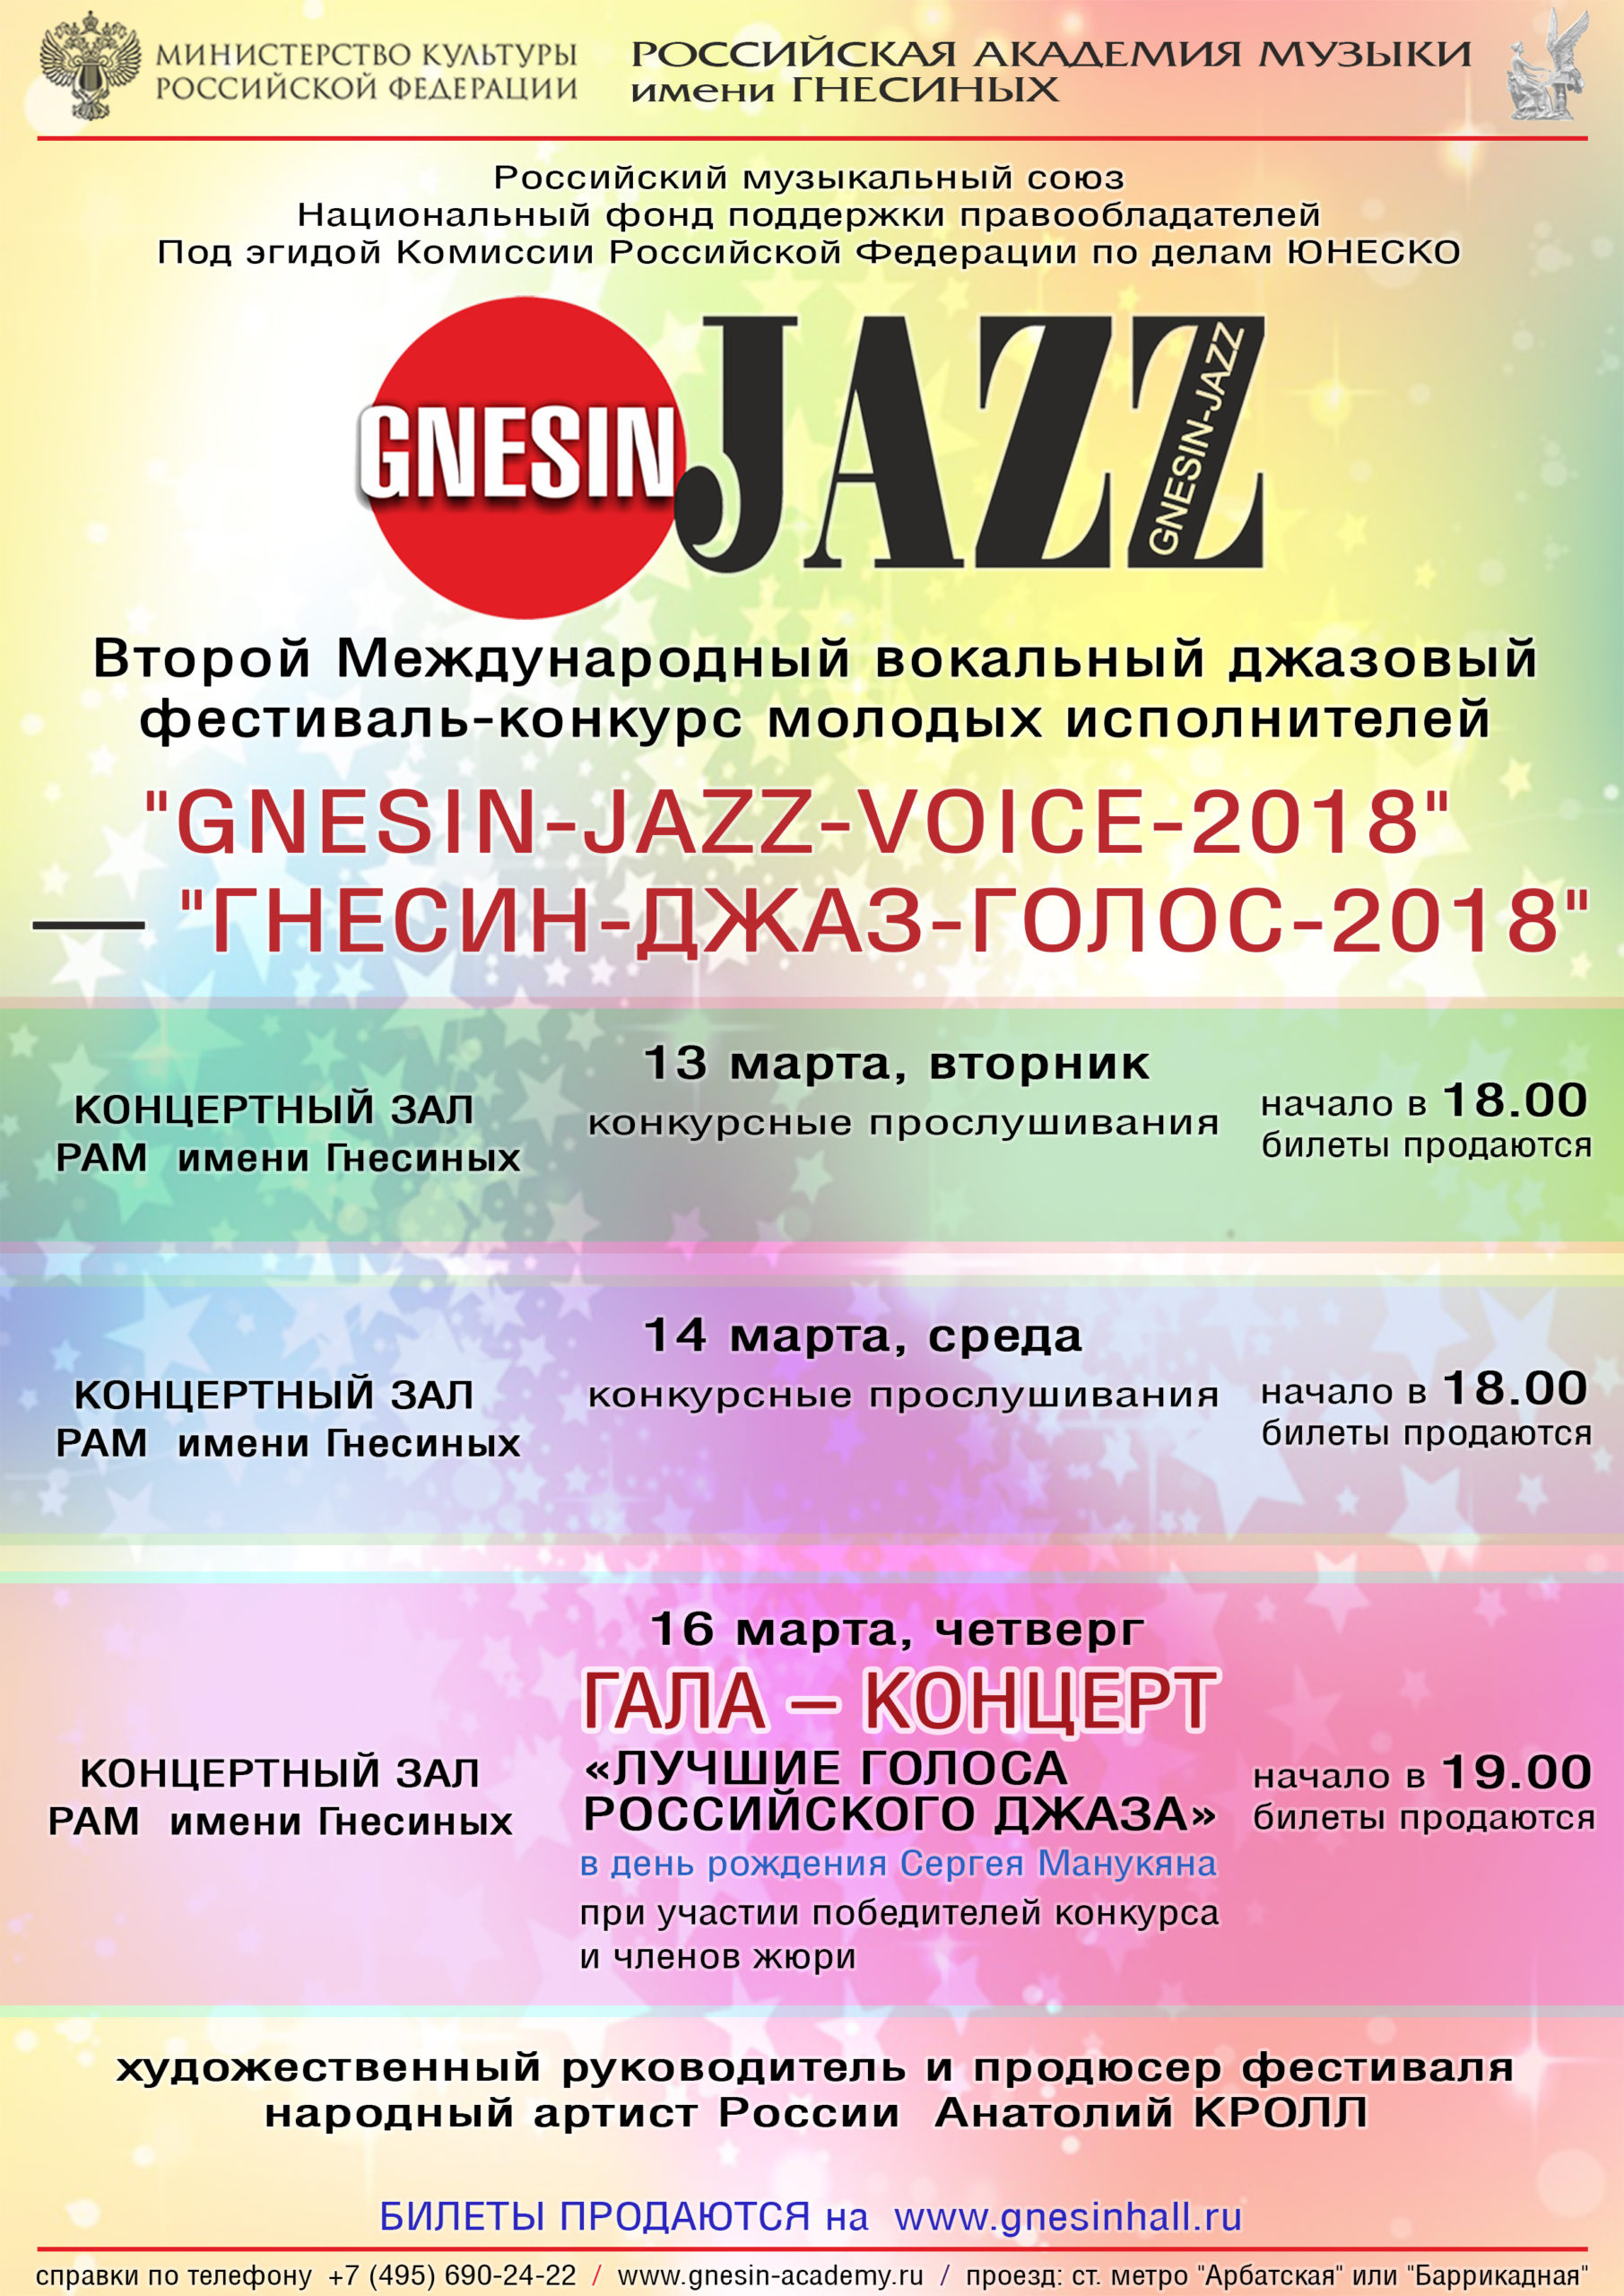 Фестиваль GNESIN-JAZZ-VOICE пройдет при поддержке НФПП